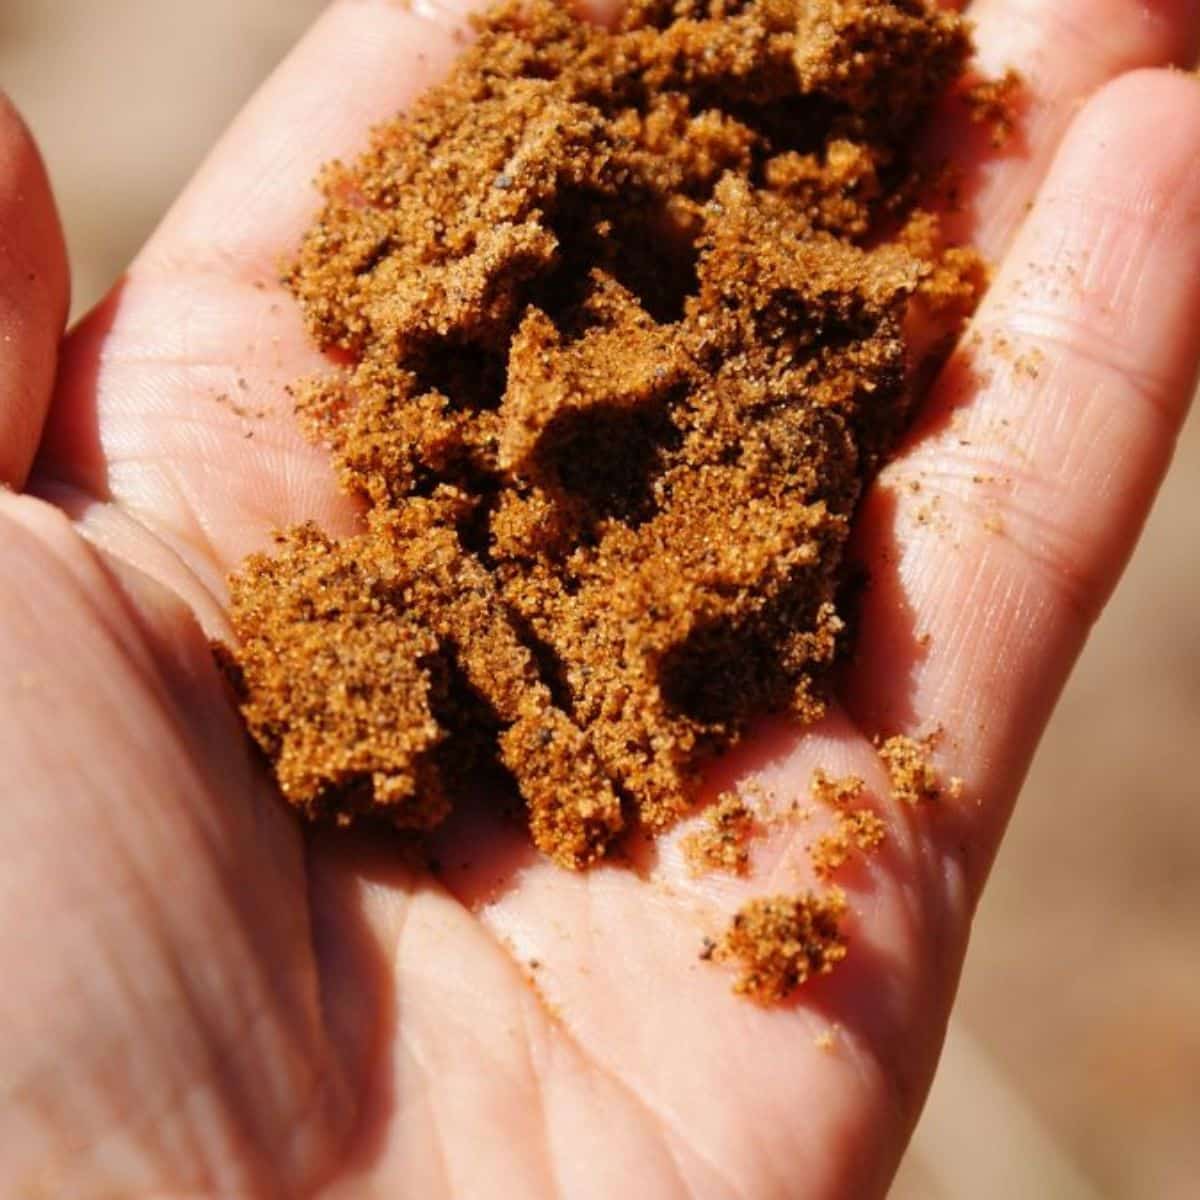 Sandy soil on a farmer's hand.